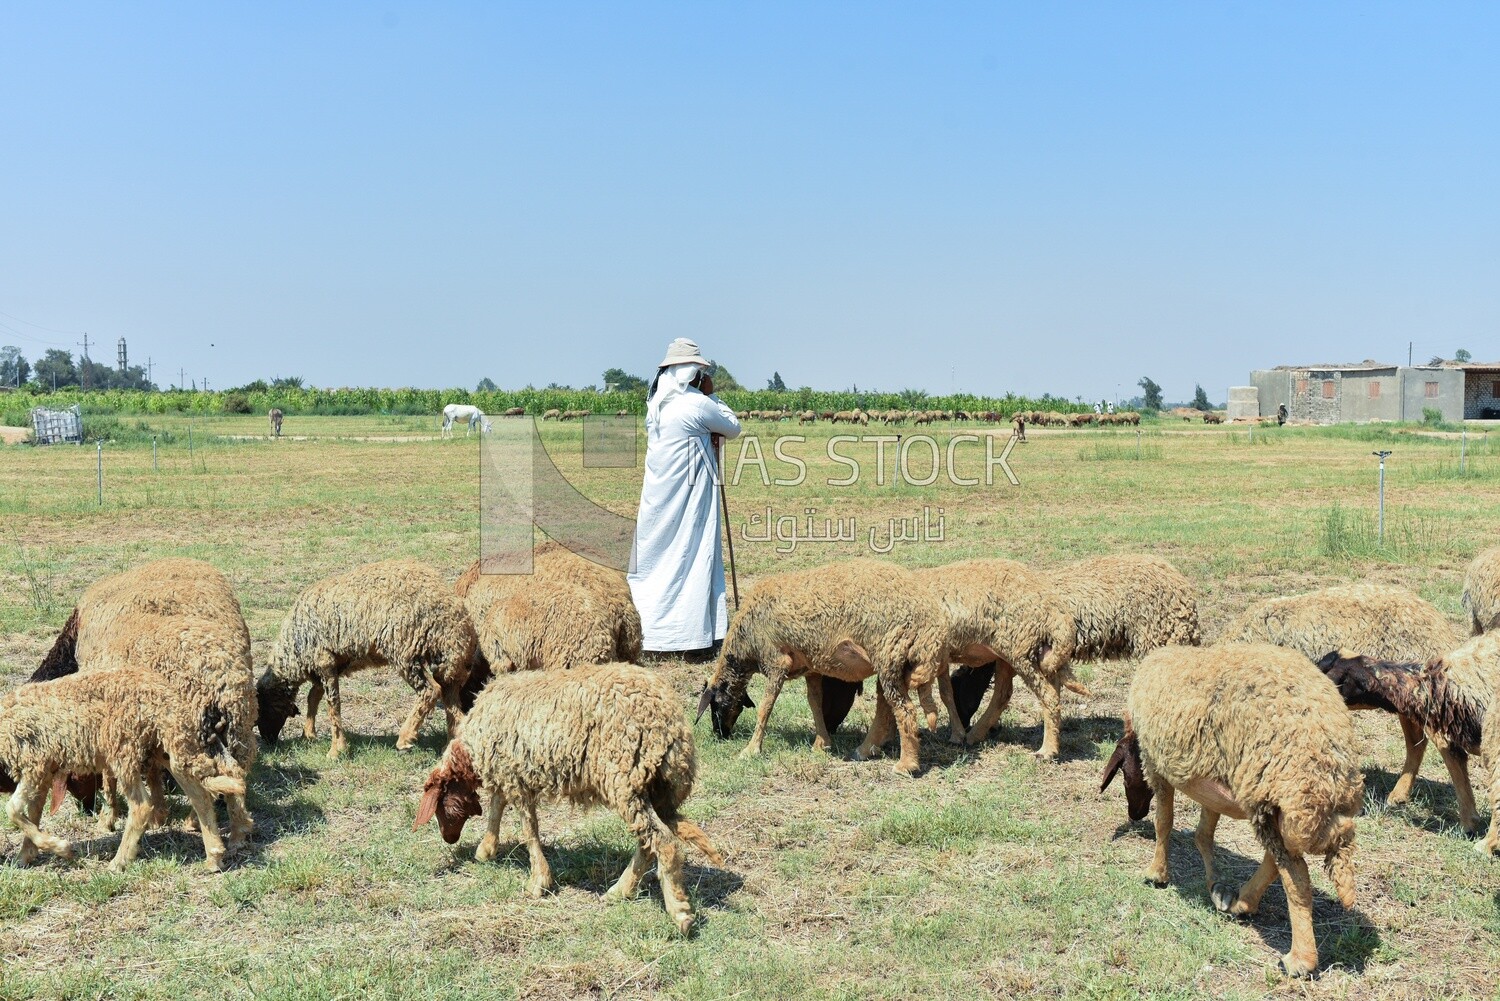 The scene of a shepherd among sheep